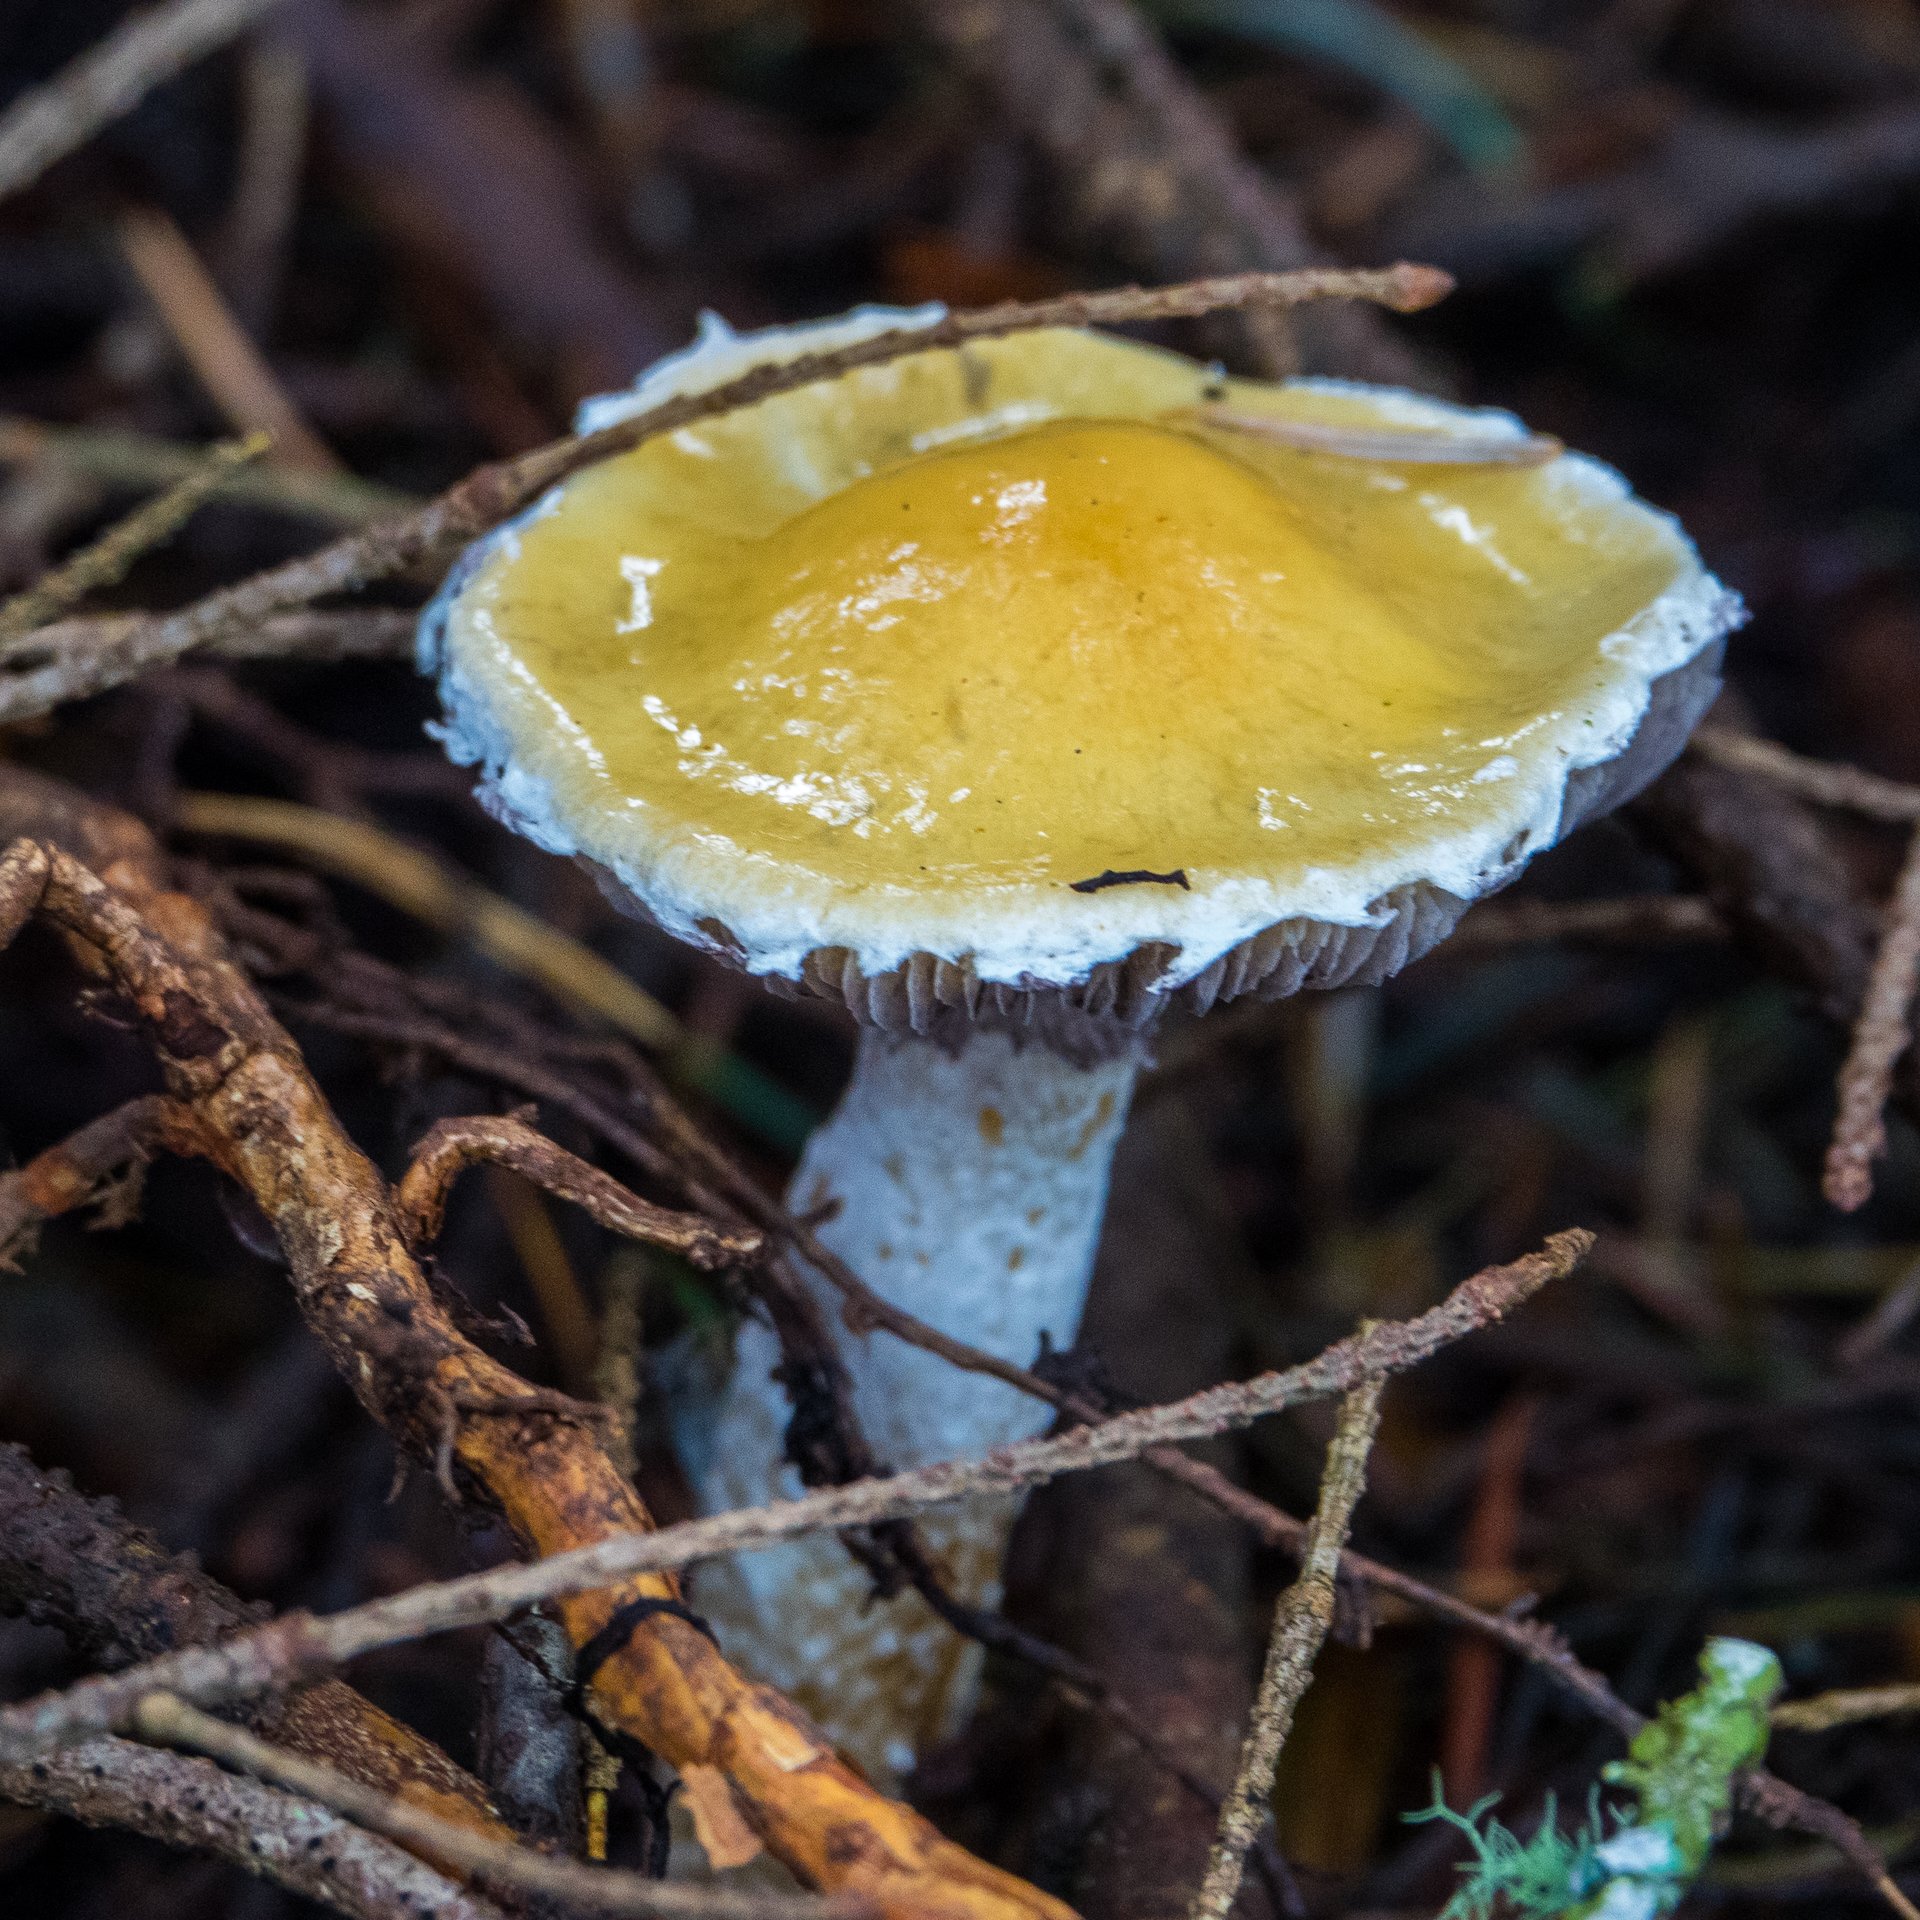  A cool mushroom. 